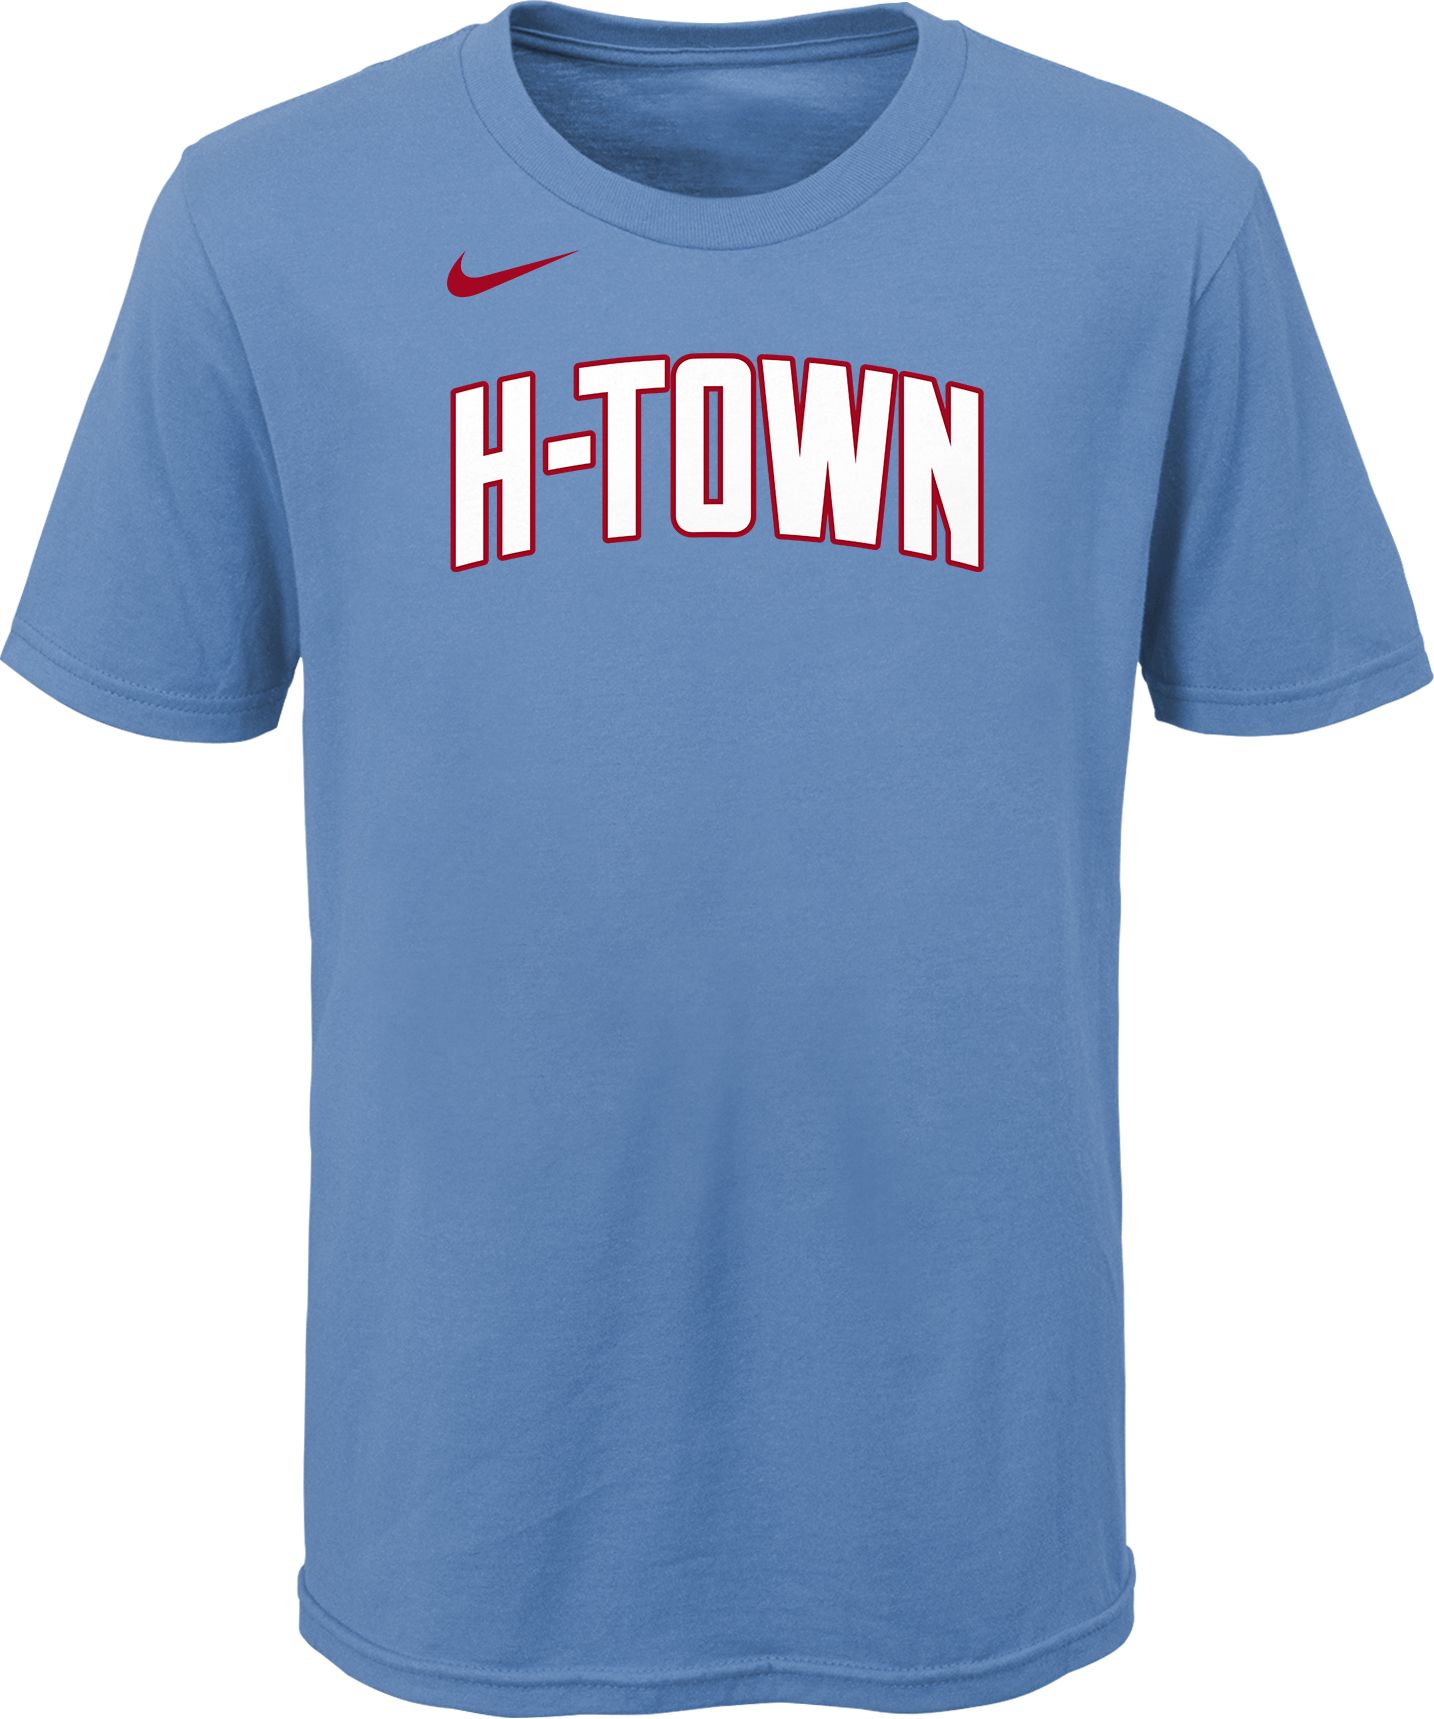 h town rockets shirt